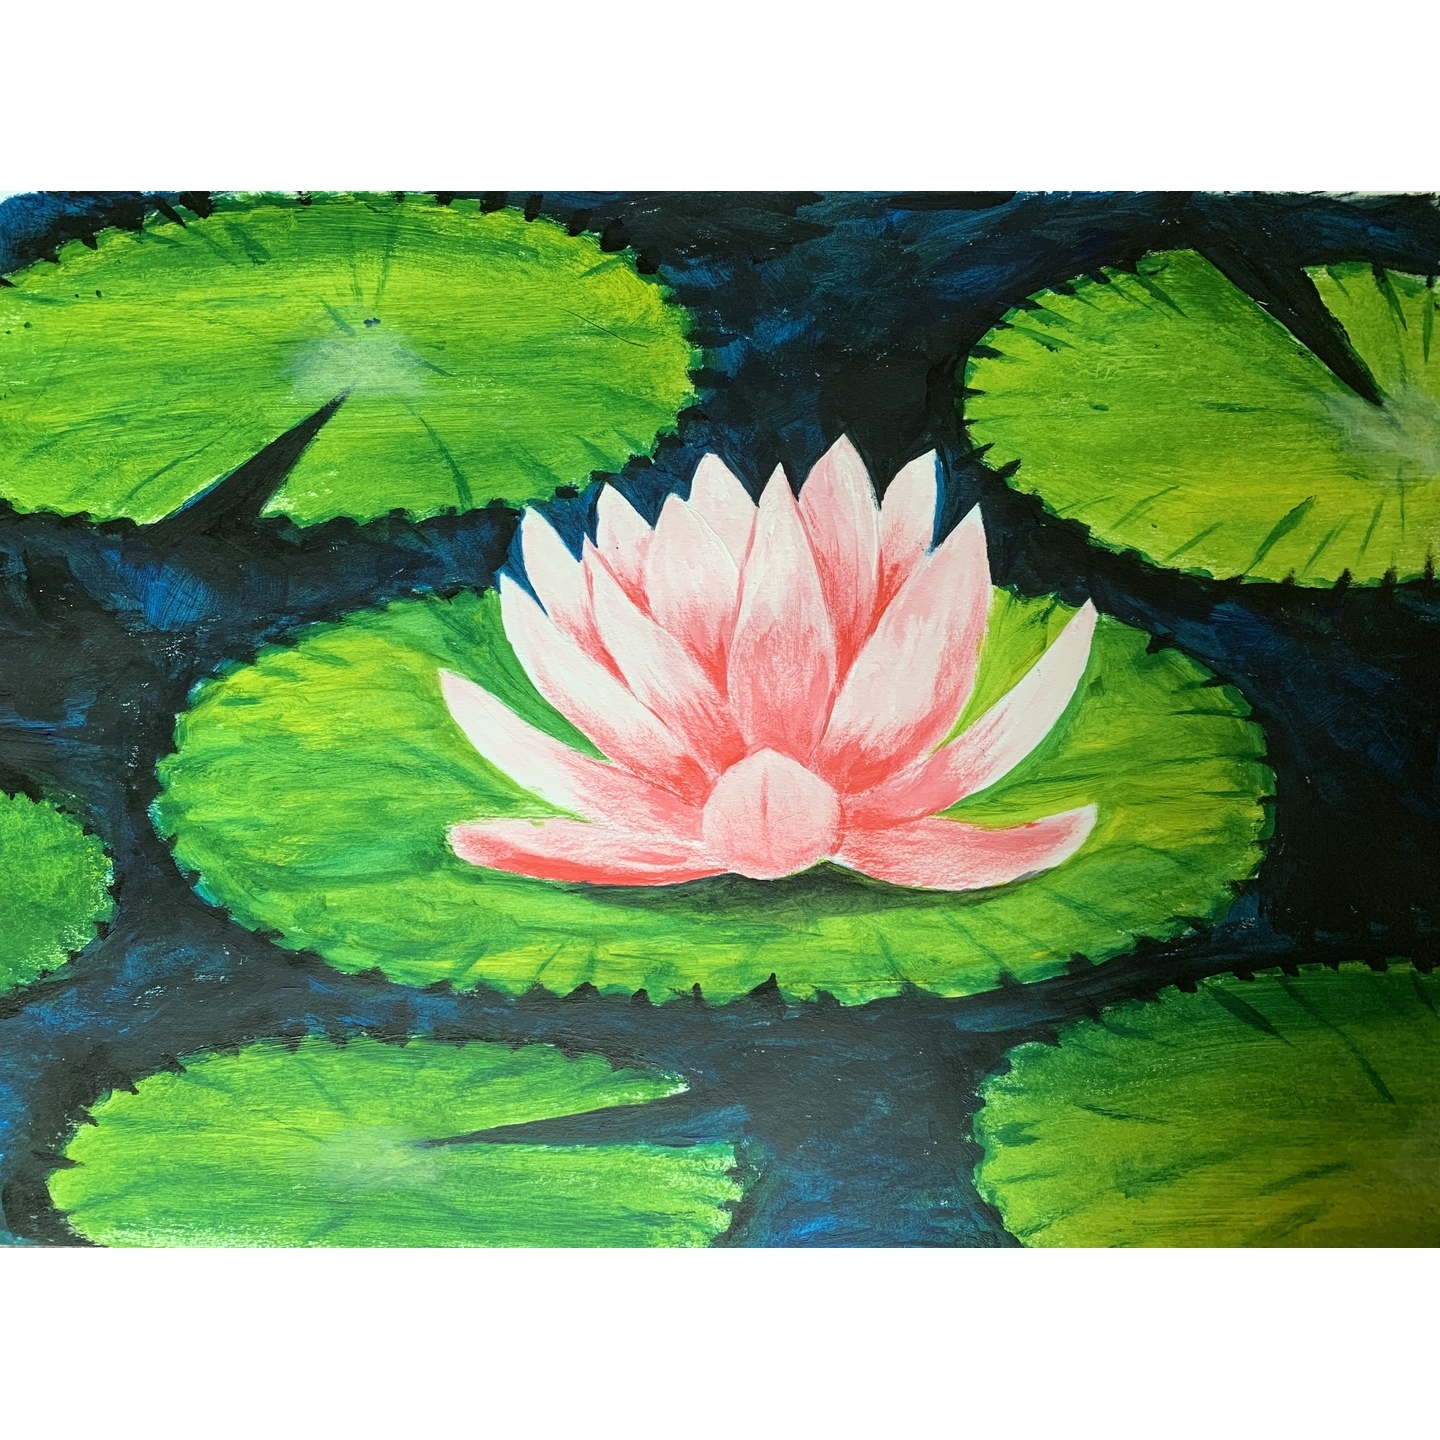 Lotus & Lily pads